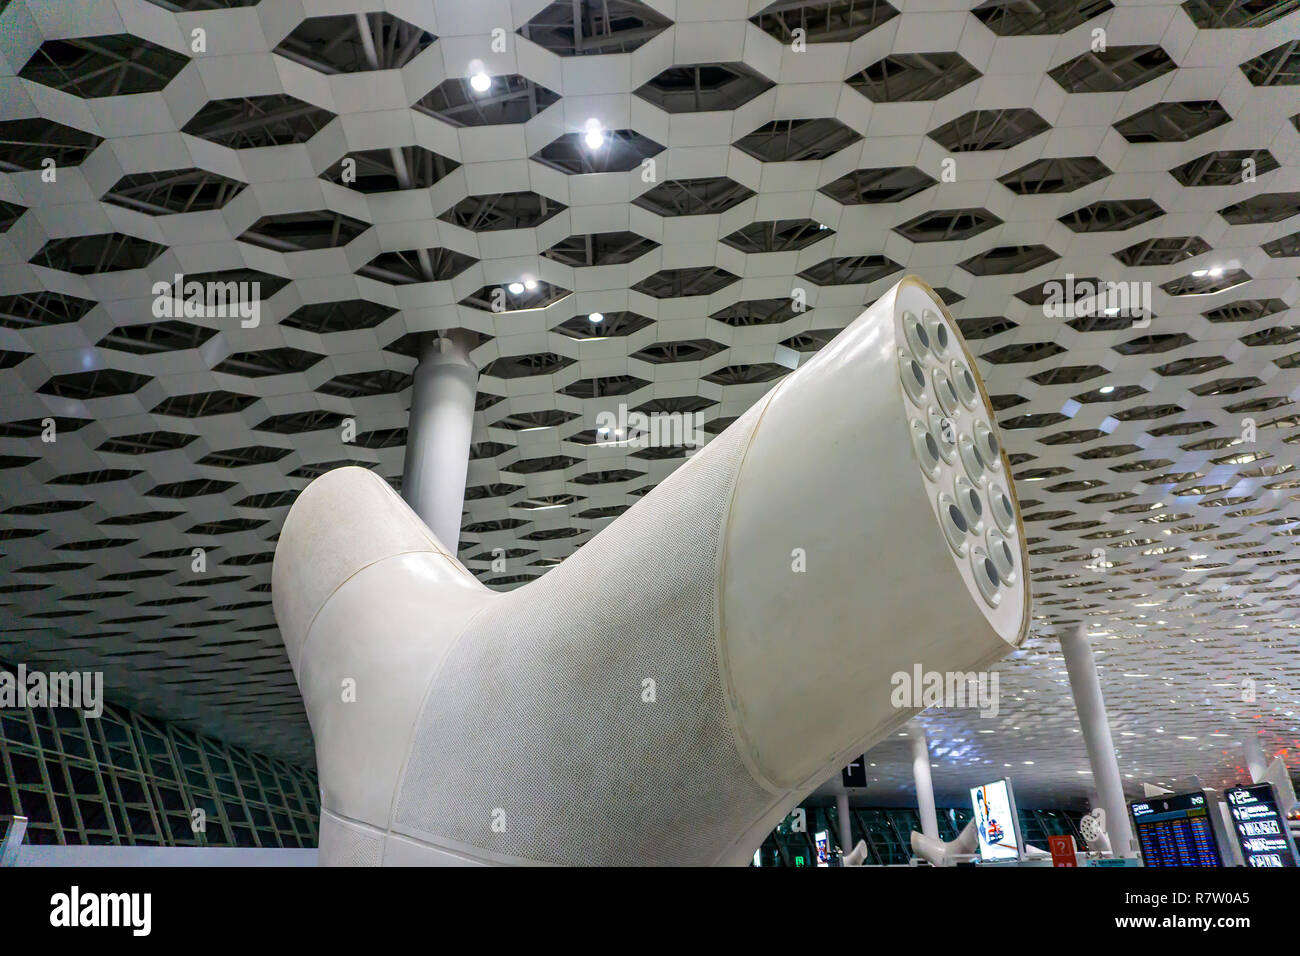 Système de Ventilation de l'aéroport à l'hôtel de voyageurs avec plafond  Définition Formes Hexagram Photo Stock - Alamy